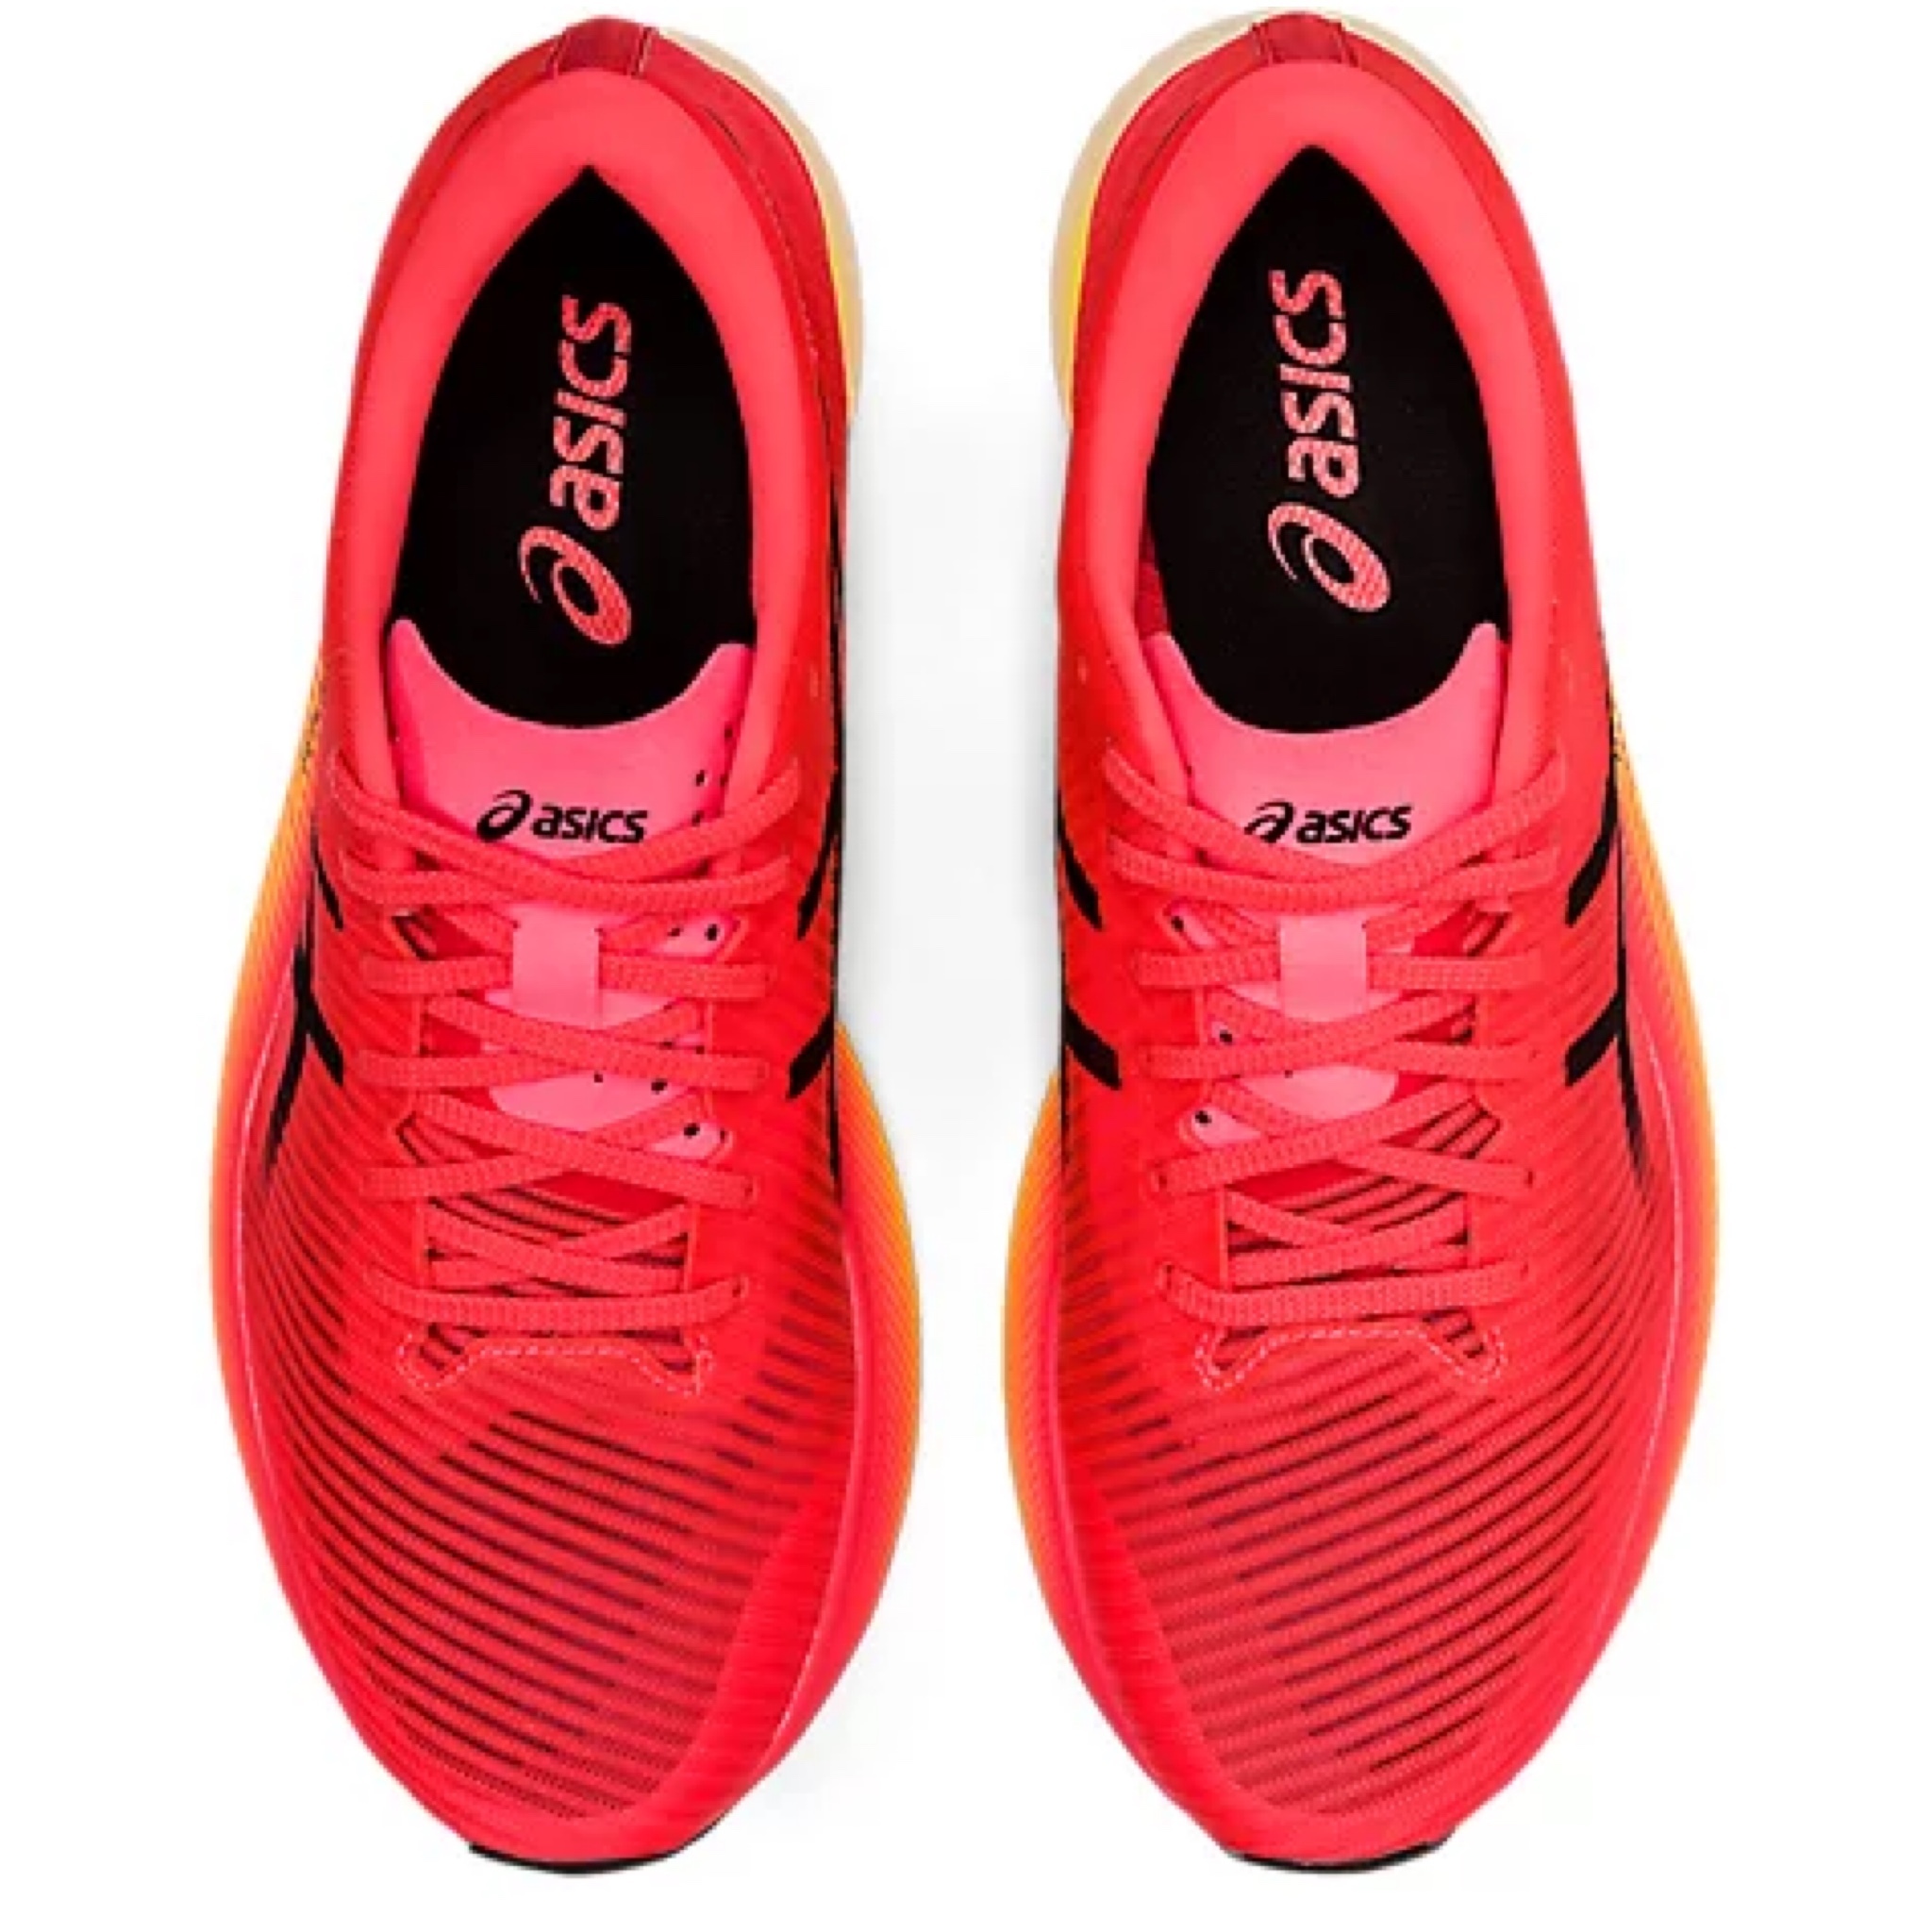 【 日本直送】Asics METASPEED EDGE 男士運動波鞋跑鞋紅黃色